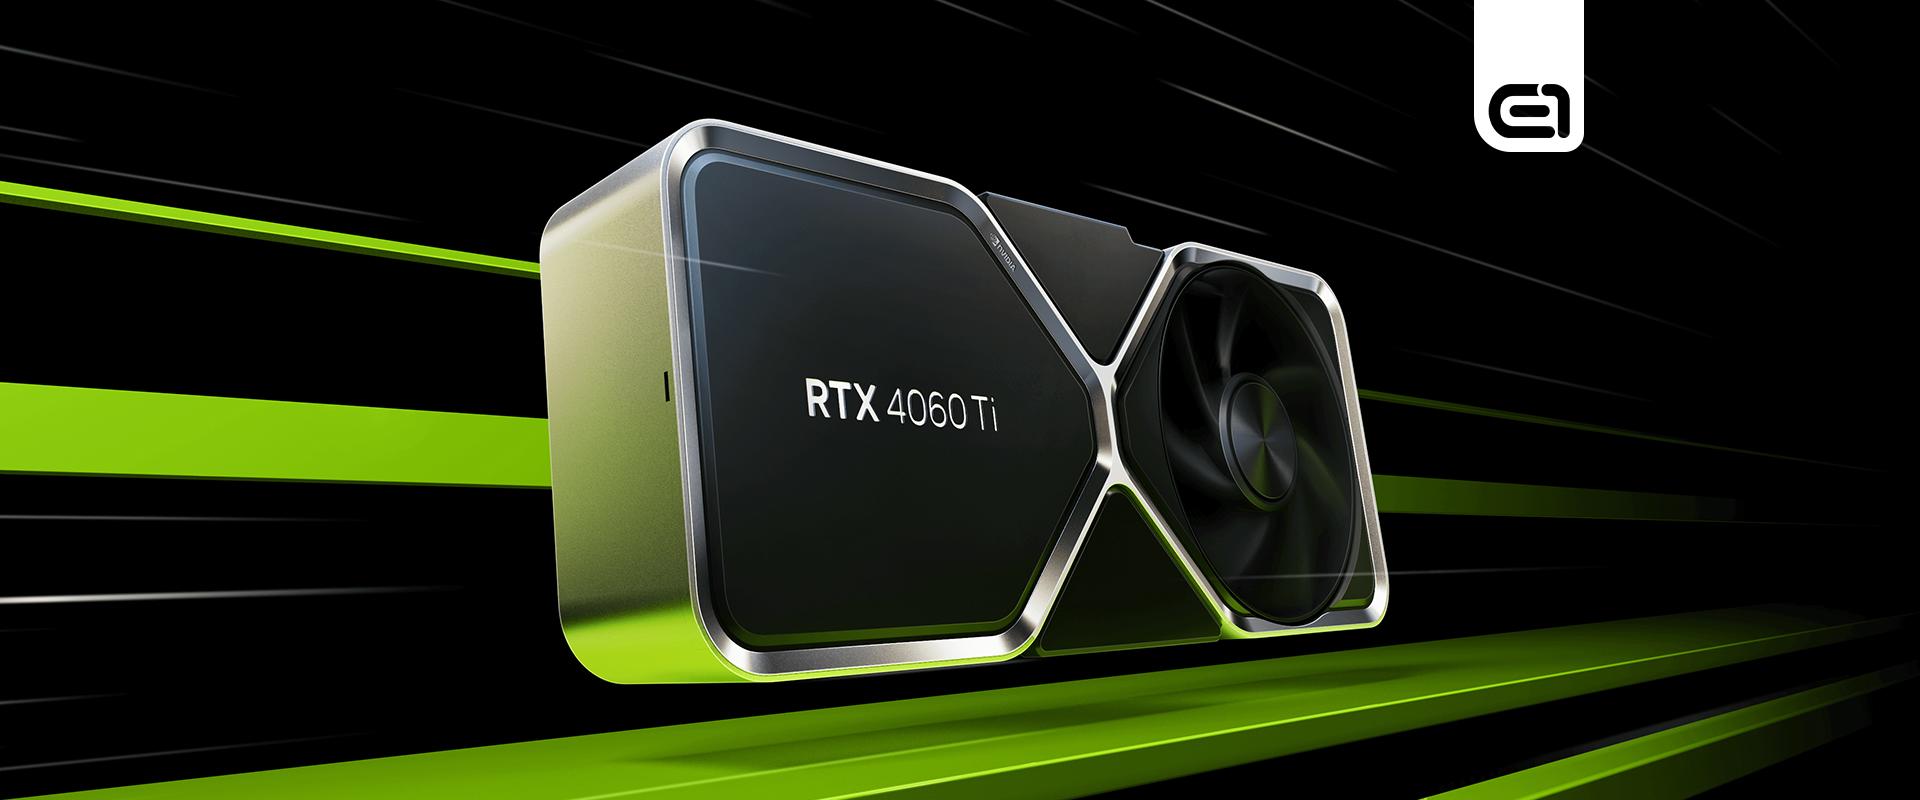 Jön az RTX 4060 Ti 16 GB memóriával, de mégis minek?